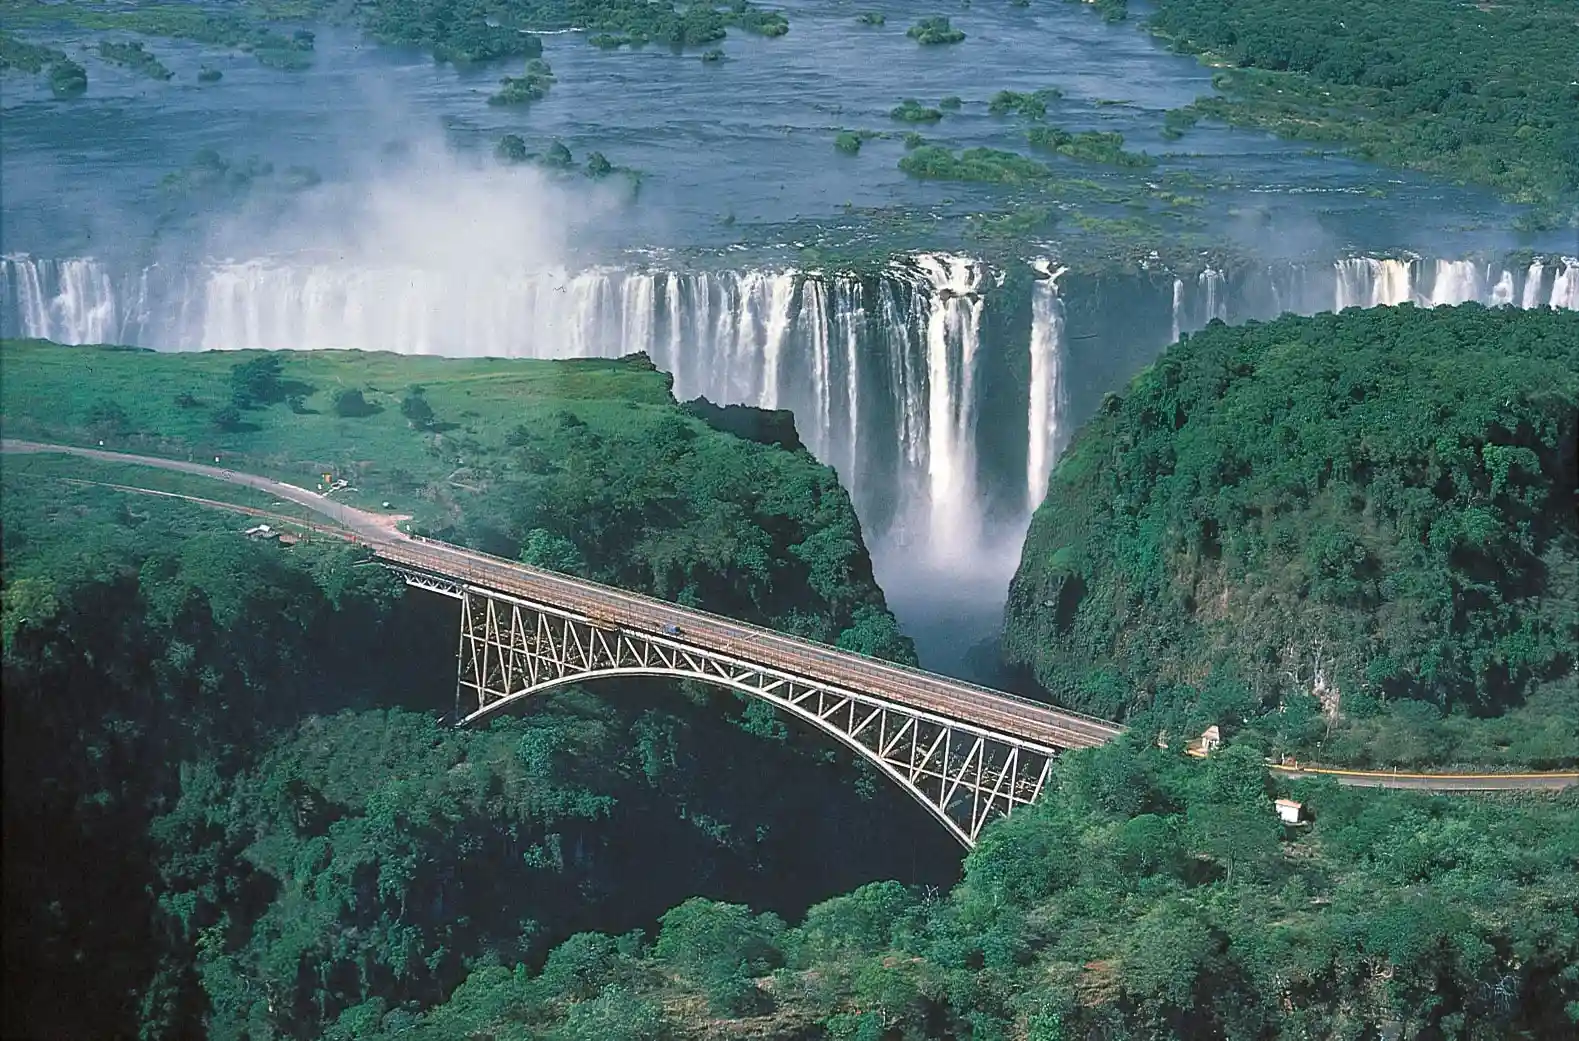 The Victoria Falls, Zambia/Zimbabwe